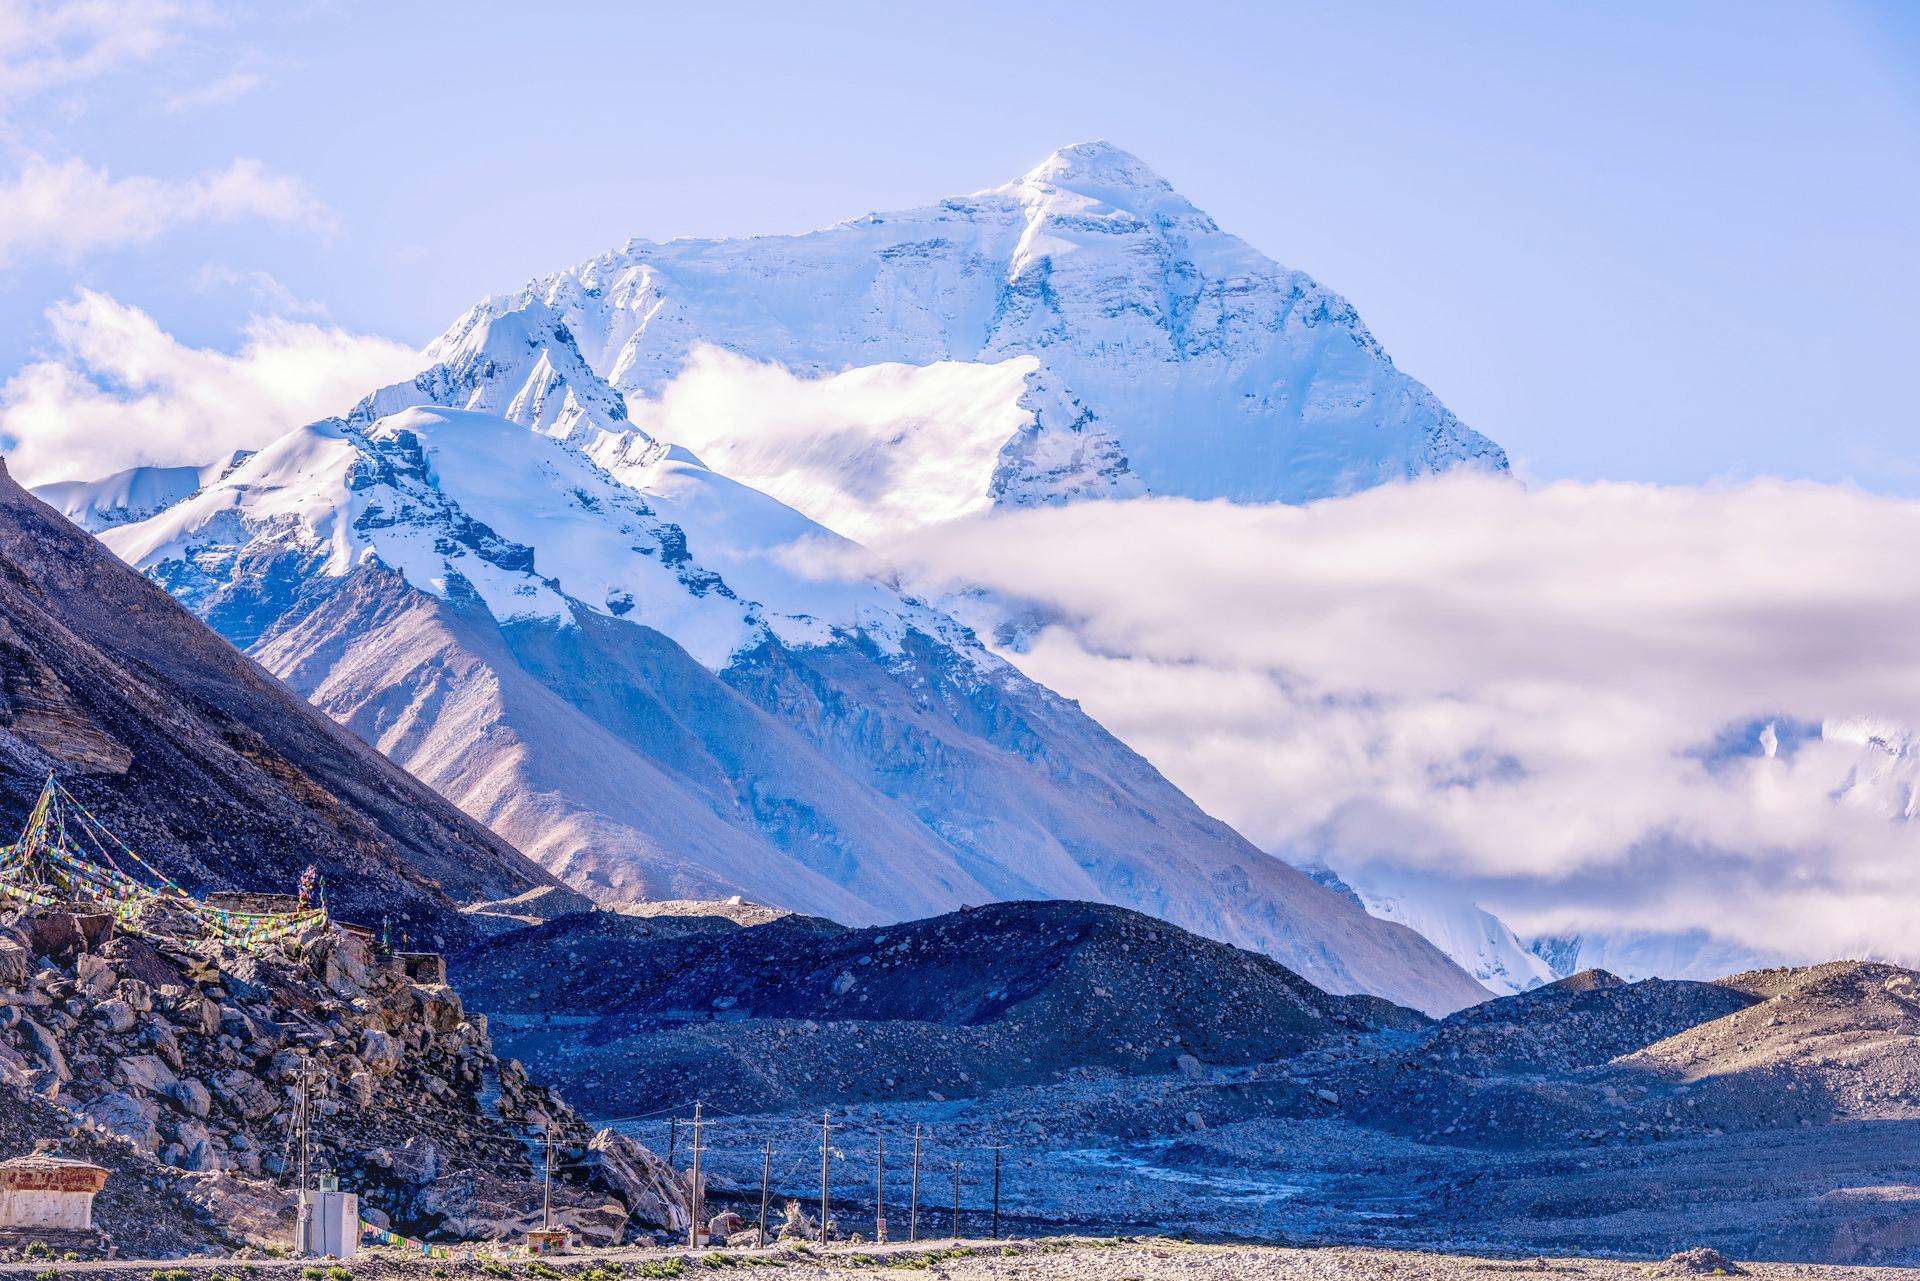 一半在尼泊尔,珠穆朗玛峰究竟是属于中国还是尼泊尔)